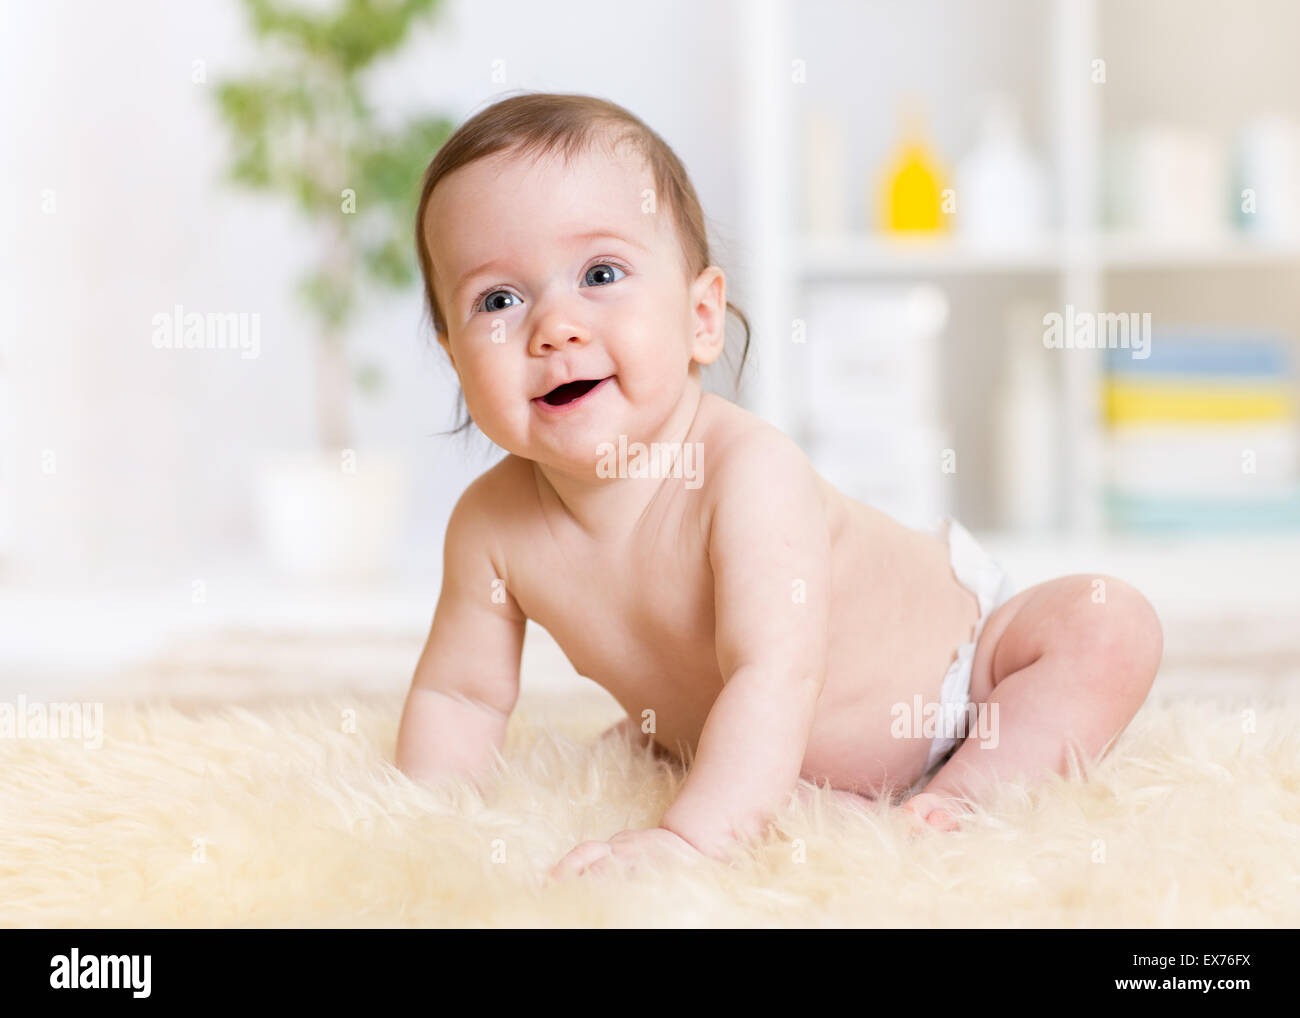 kriechende weared Babywindel Stockfoto